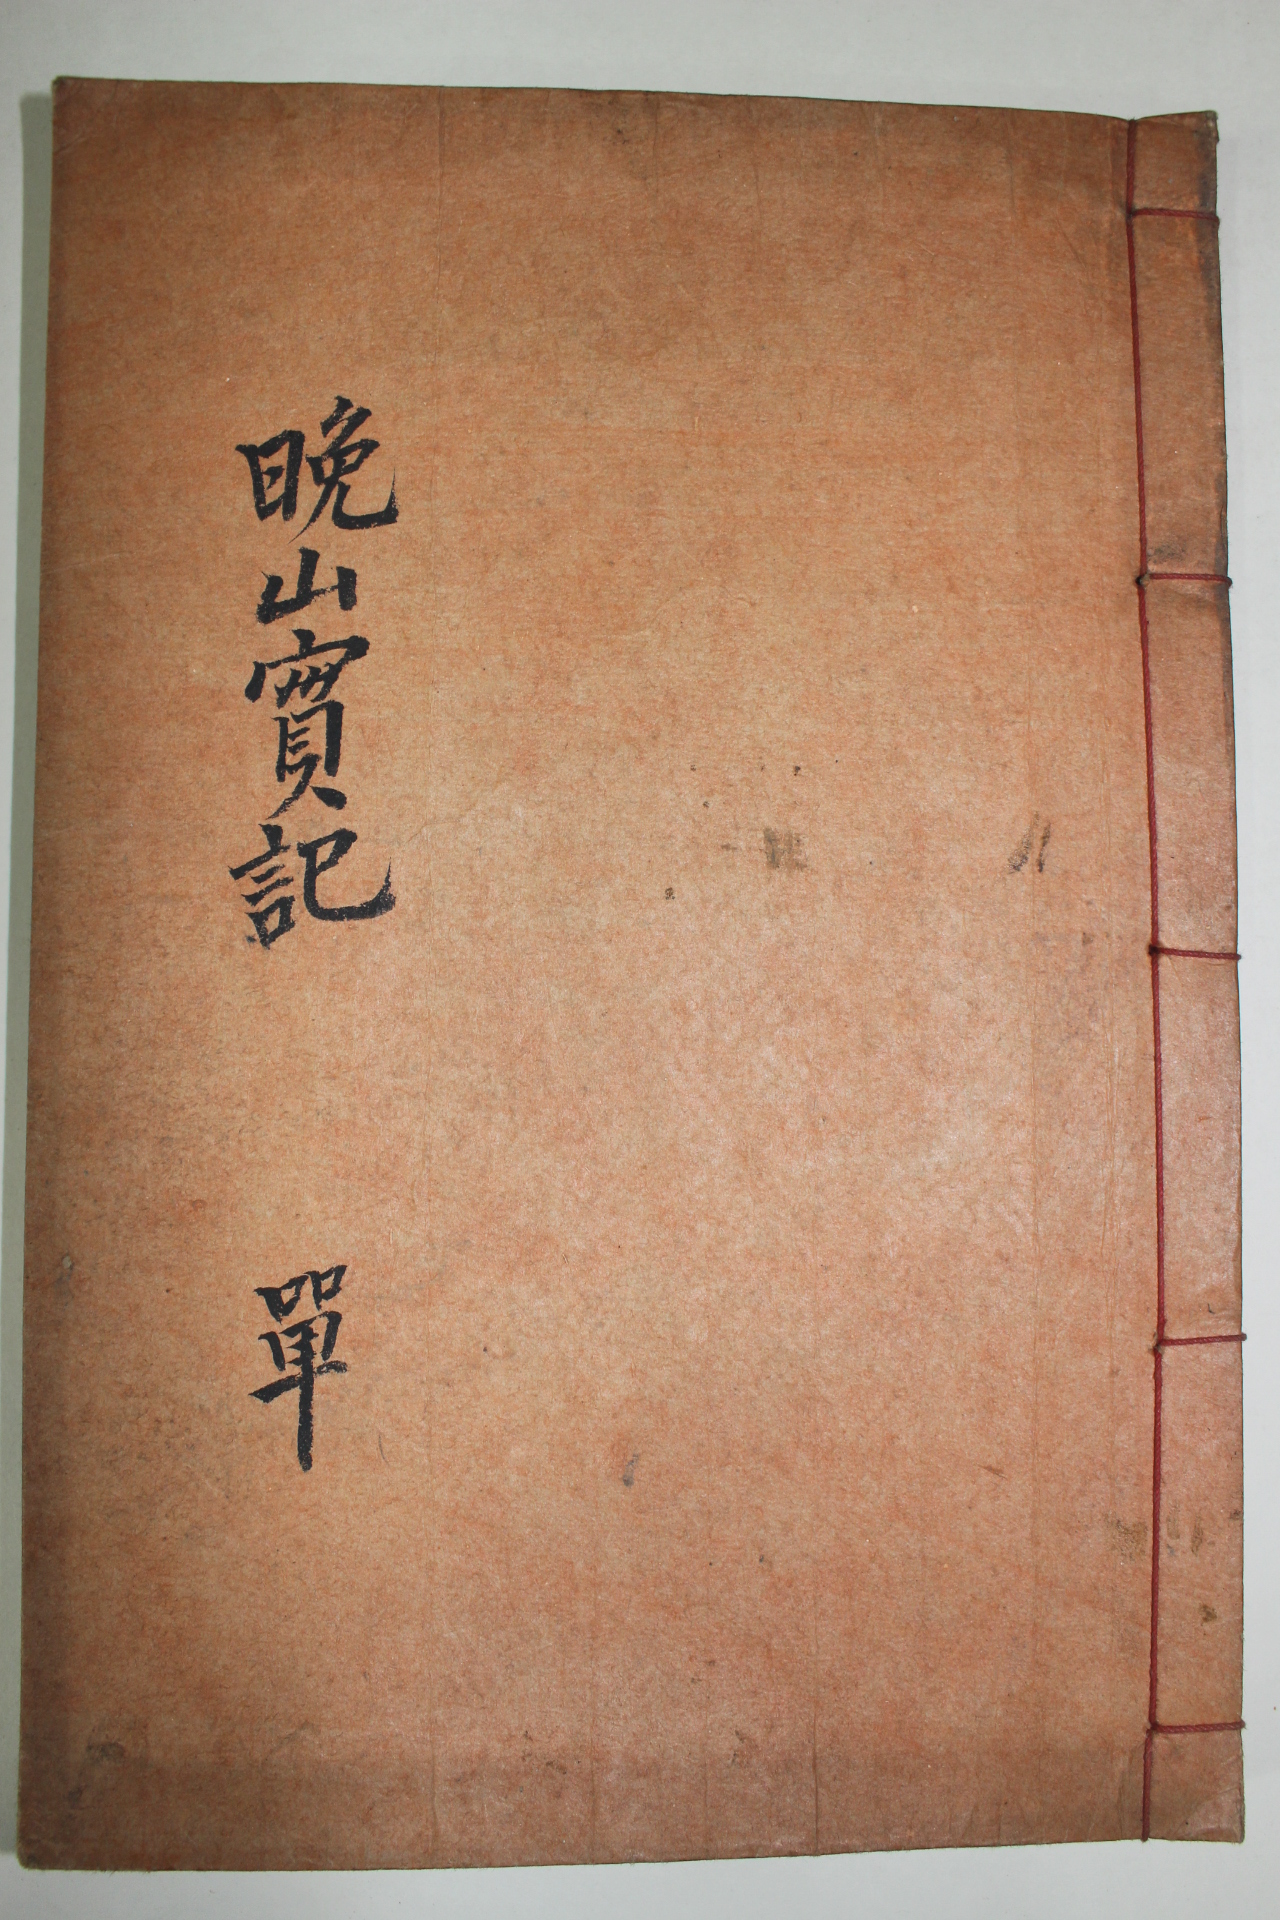 1954년 연활자본(鉛活字本) 정택기(鄭澤基) 만산실기(晩山實記) 1책완질